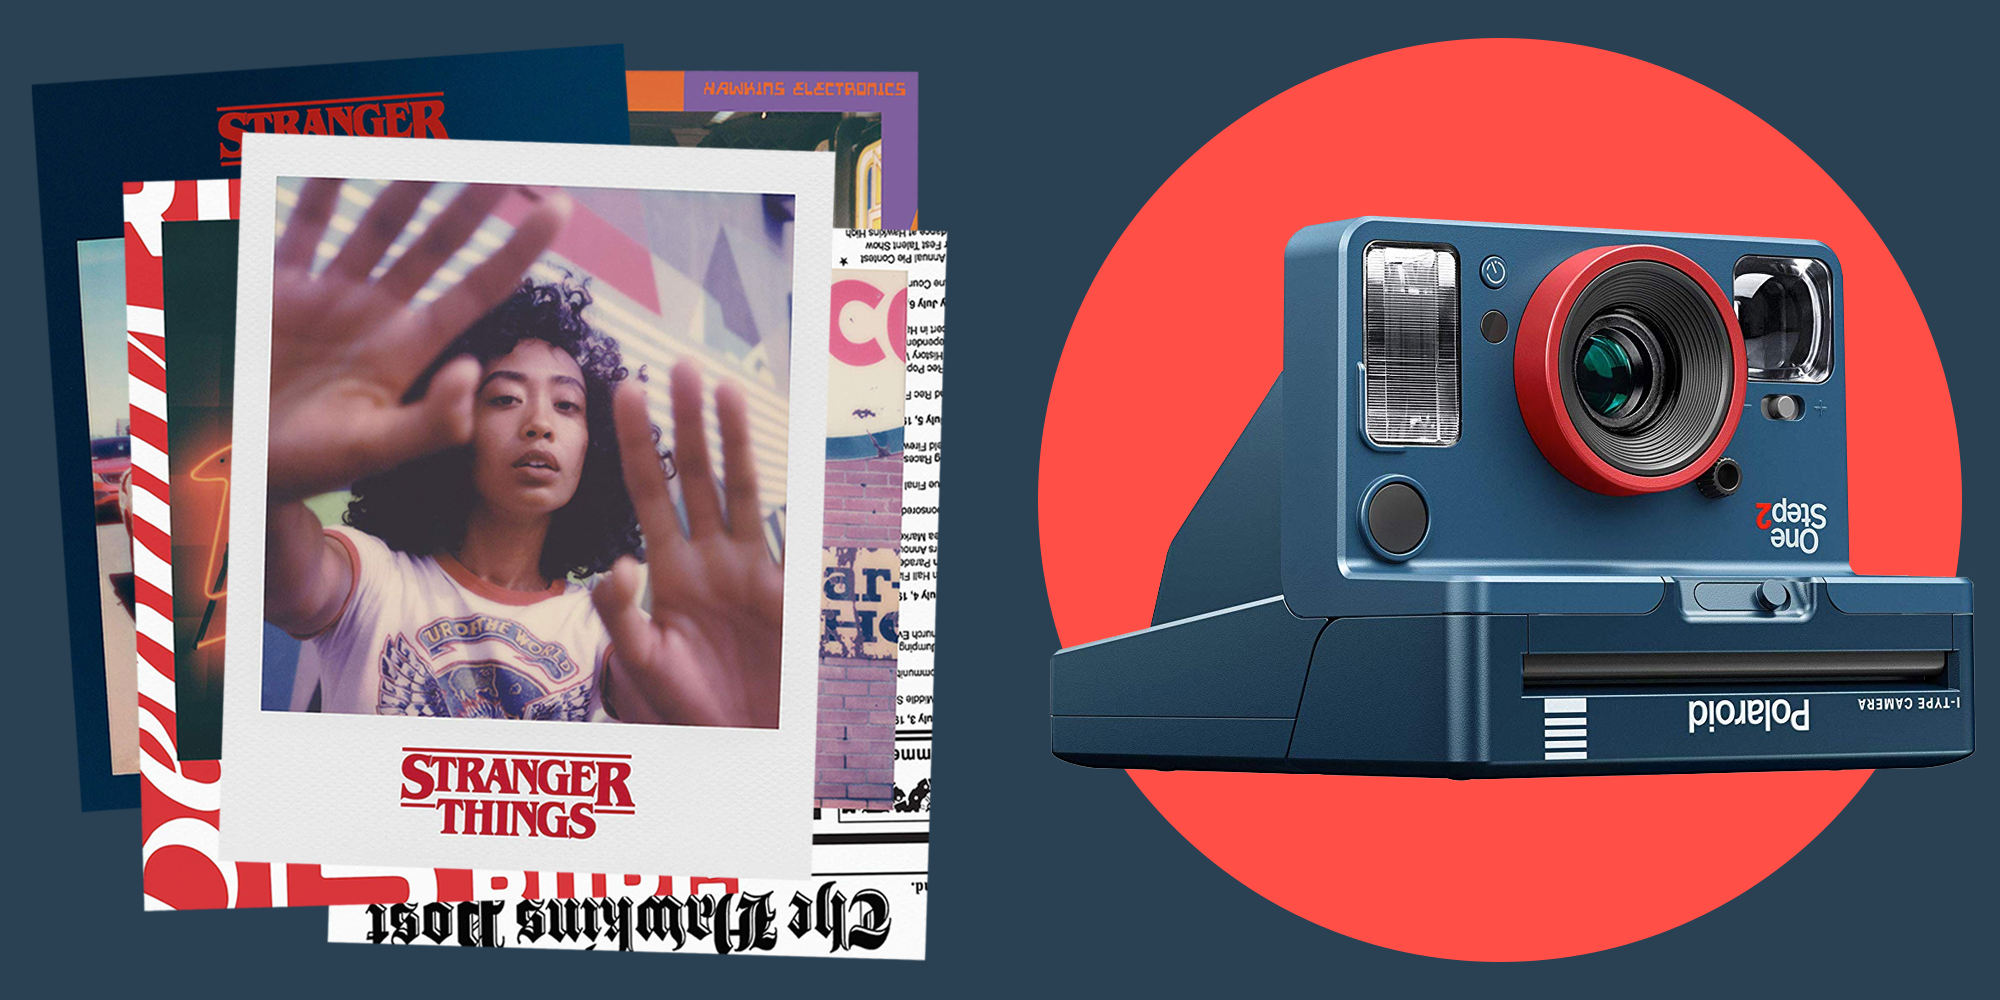 verf Bakken kruising Stranger Things Polaroid OneStep 2 Camera with Upside Down Instant Film  Released for Netflix Premiere